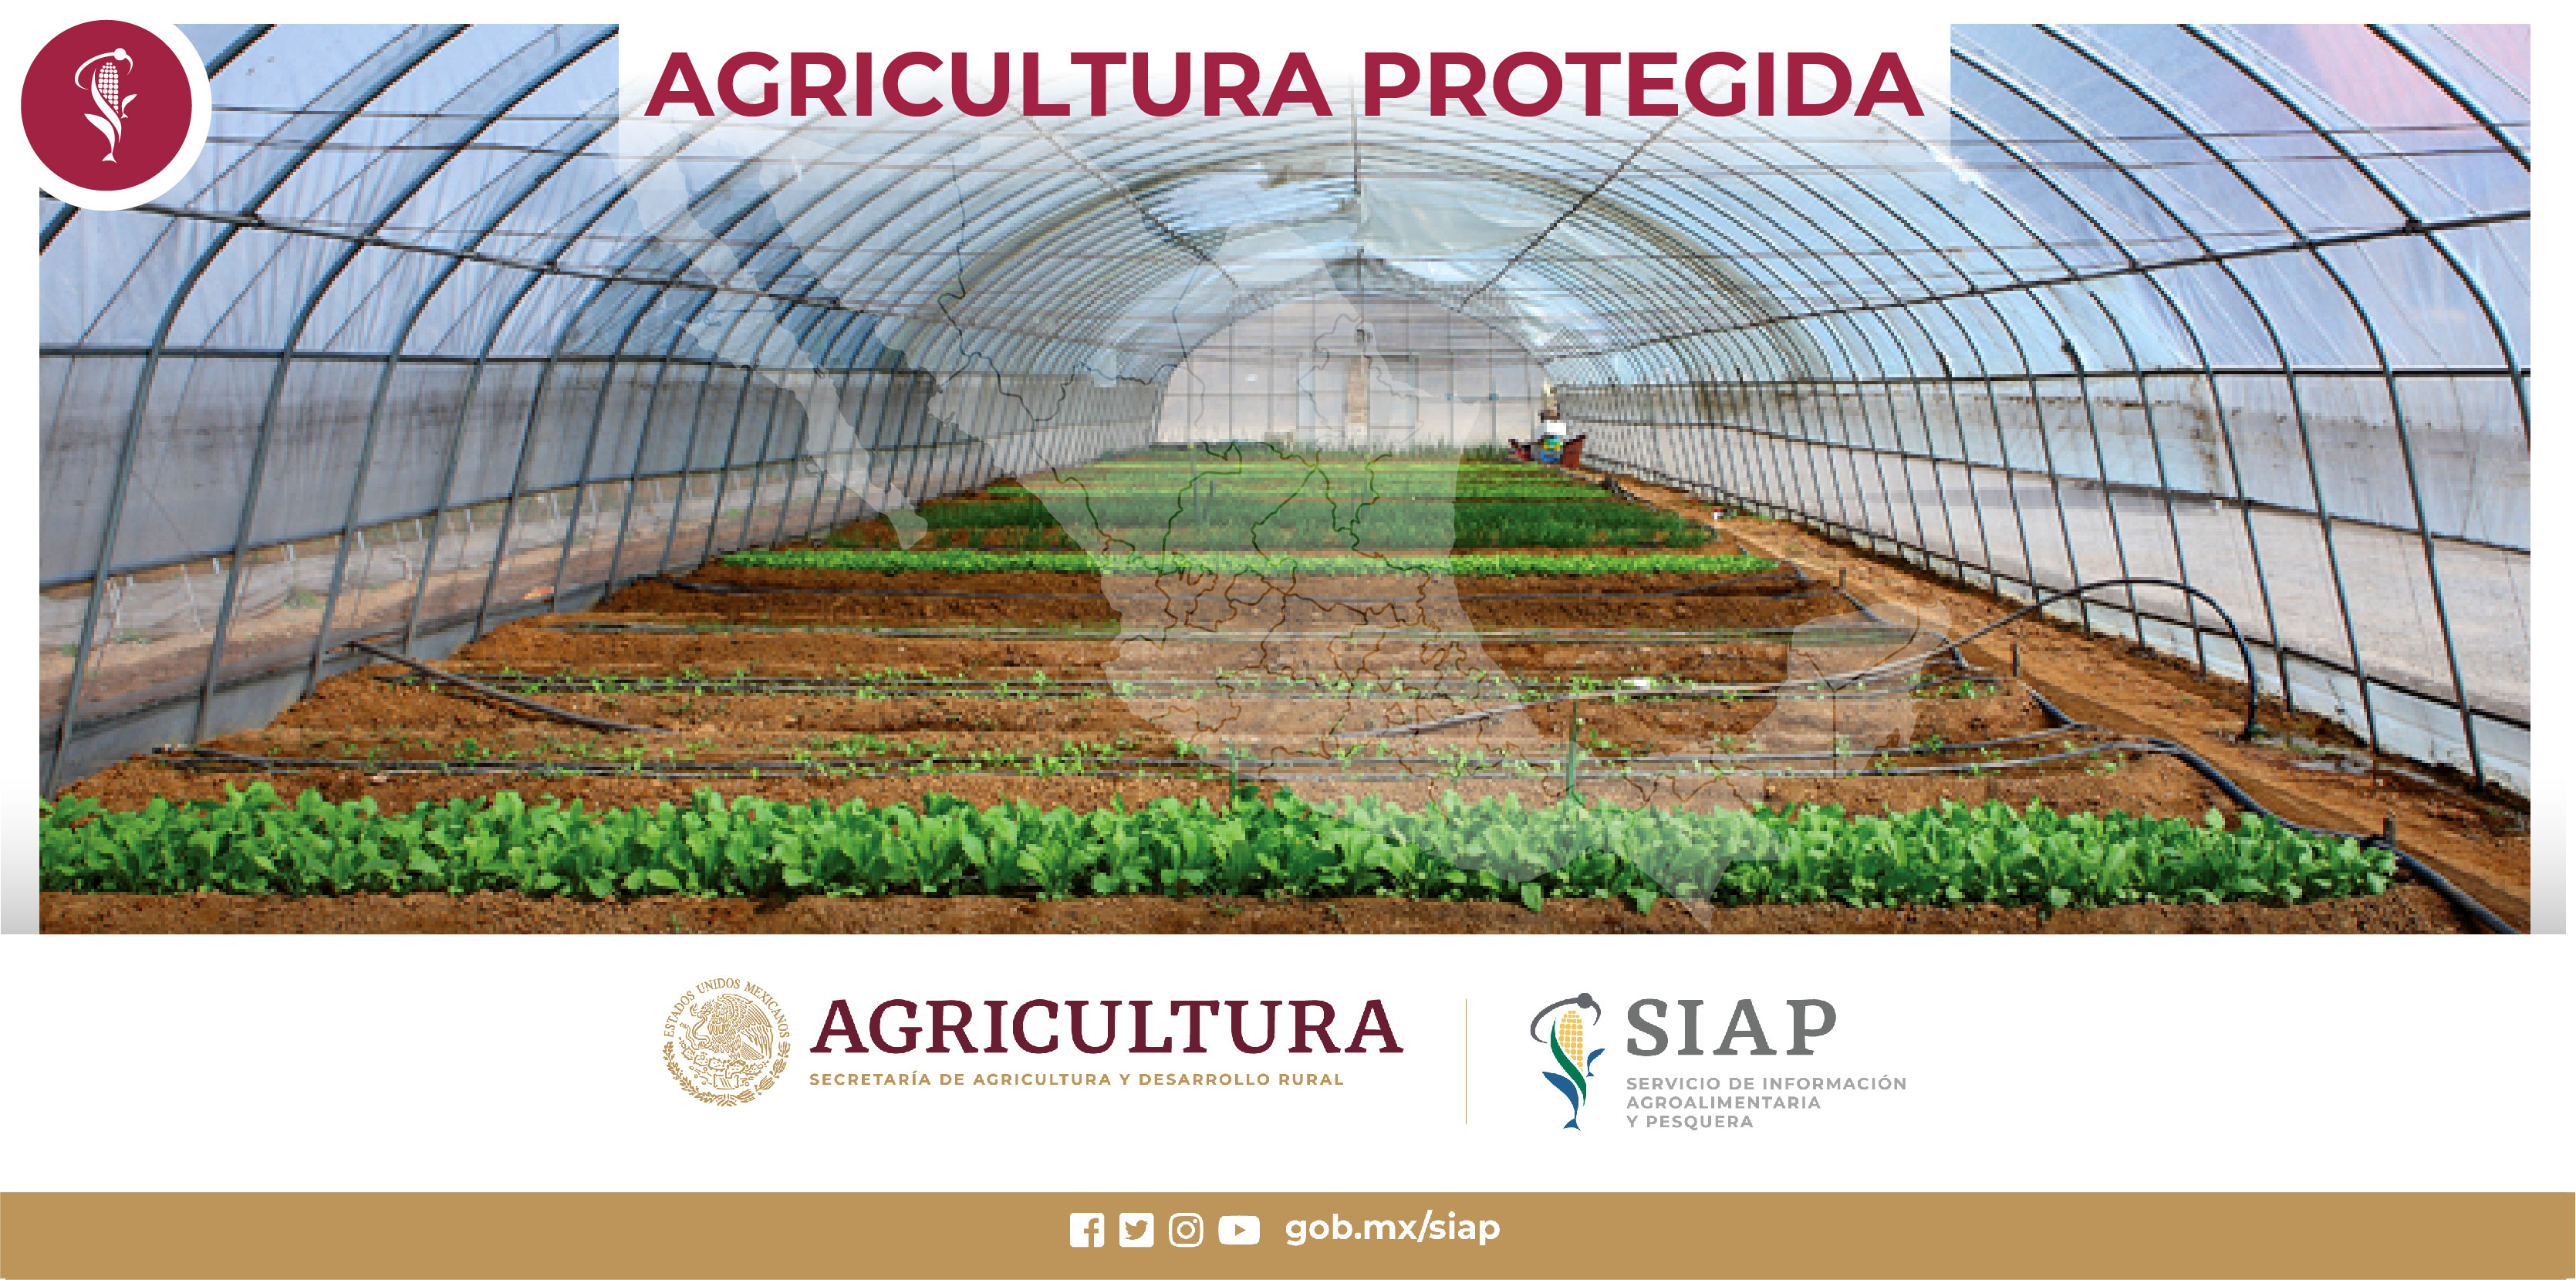 La agricultura protegida es aquella que se realiza bajo diversos tipos de estructuras con
la finalidad de disminuir las restricciones que impone el medio ambiente, garantizando
así el desarrollo óptimo de los cultivos.